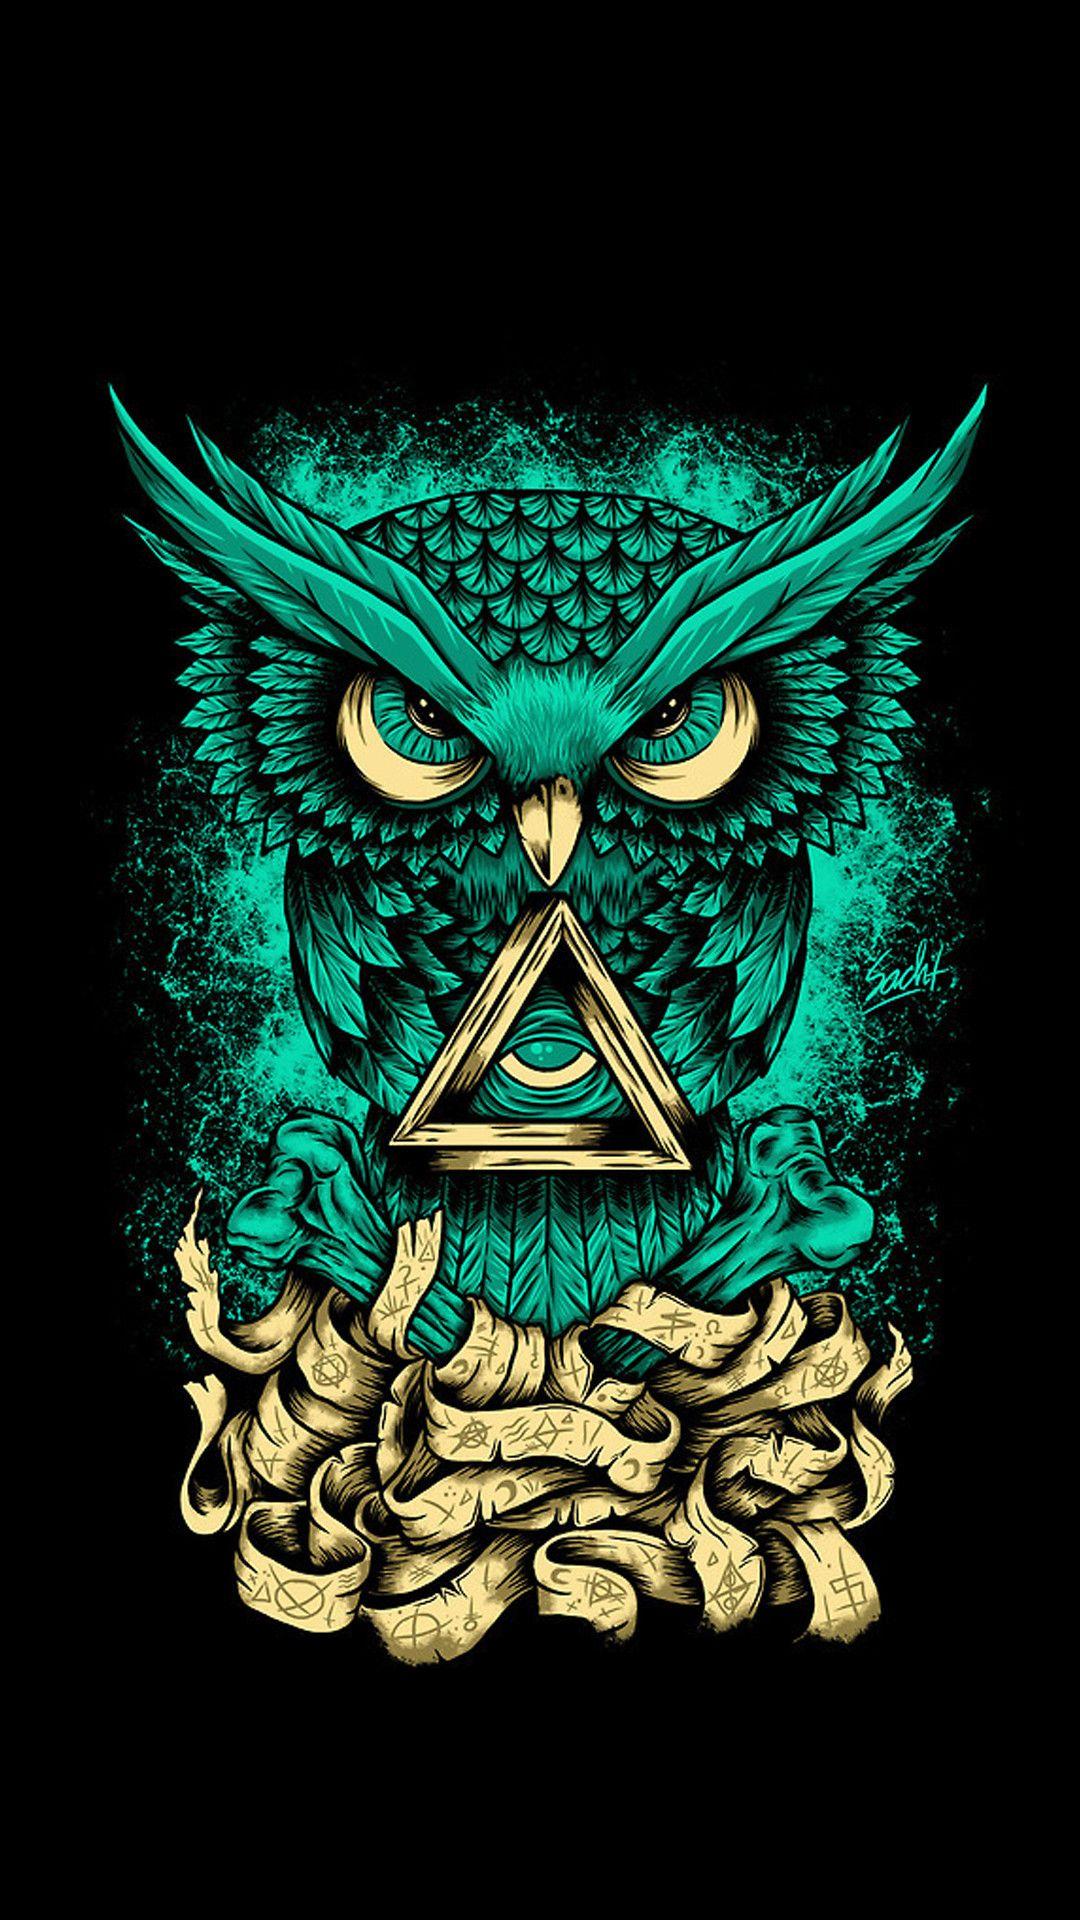 Illuminati Owl Wallpapers - Top Free Illuminati Owl ...